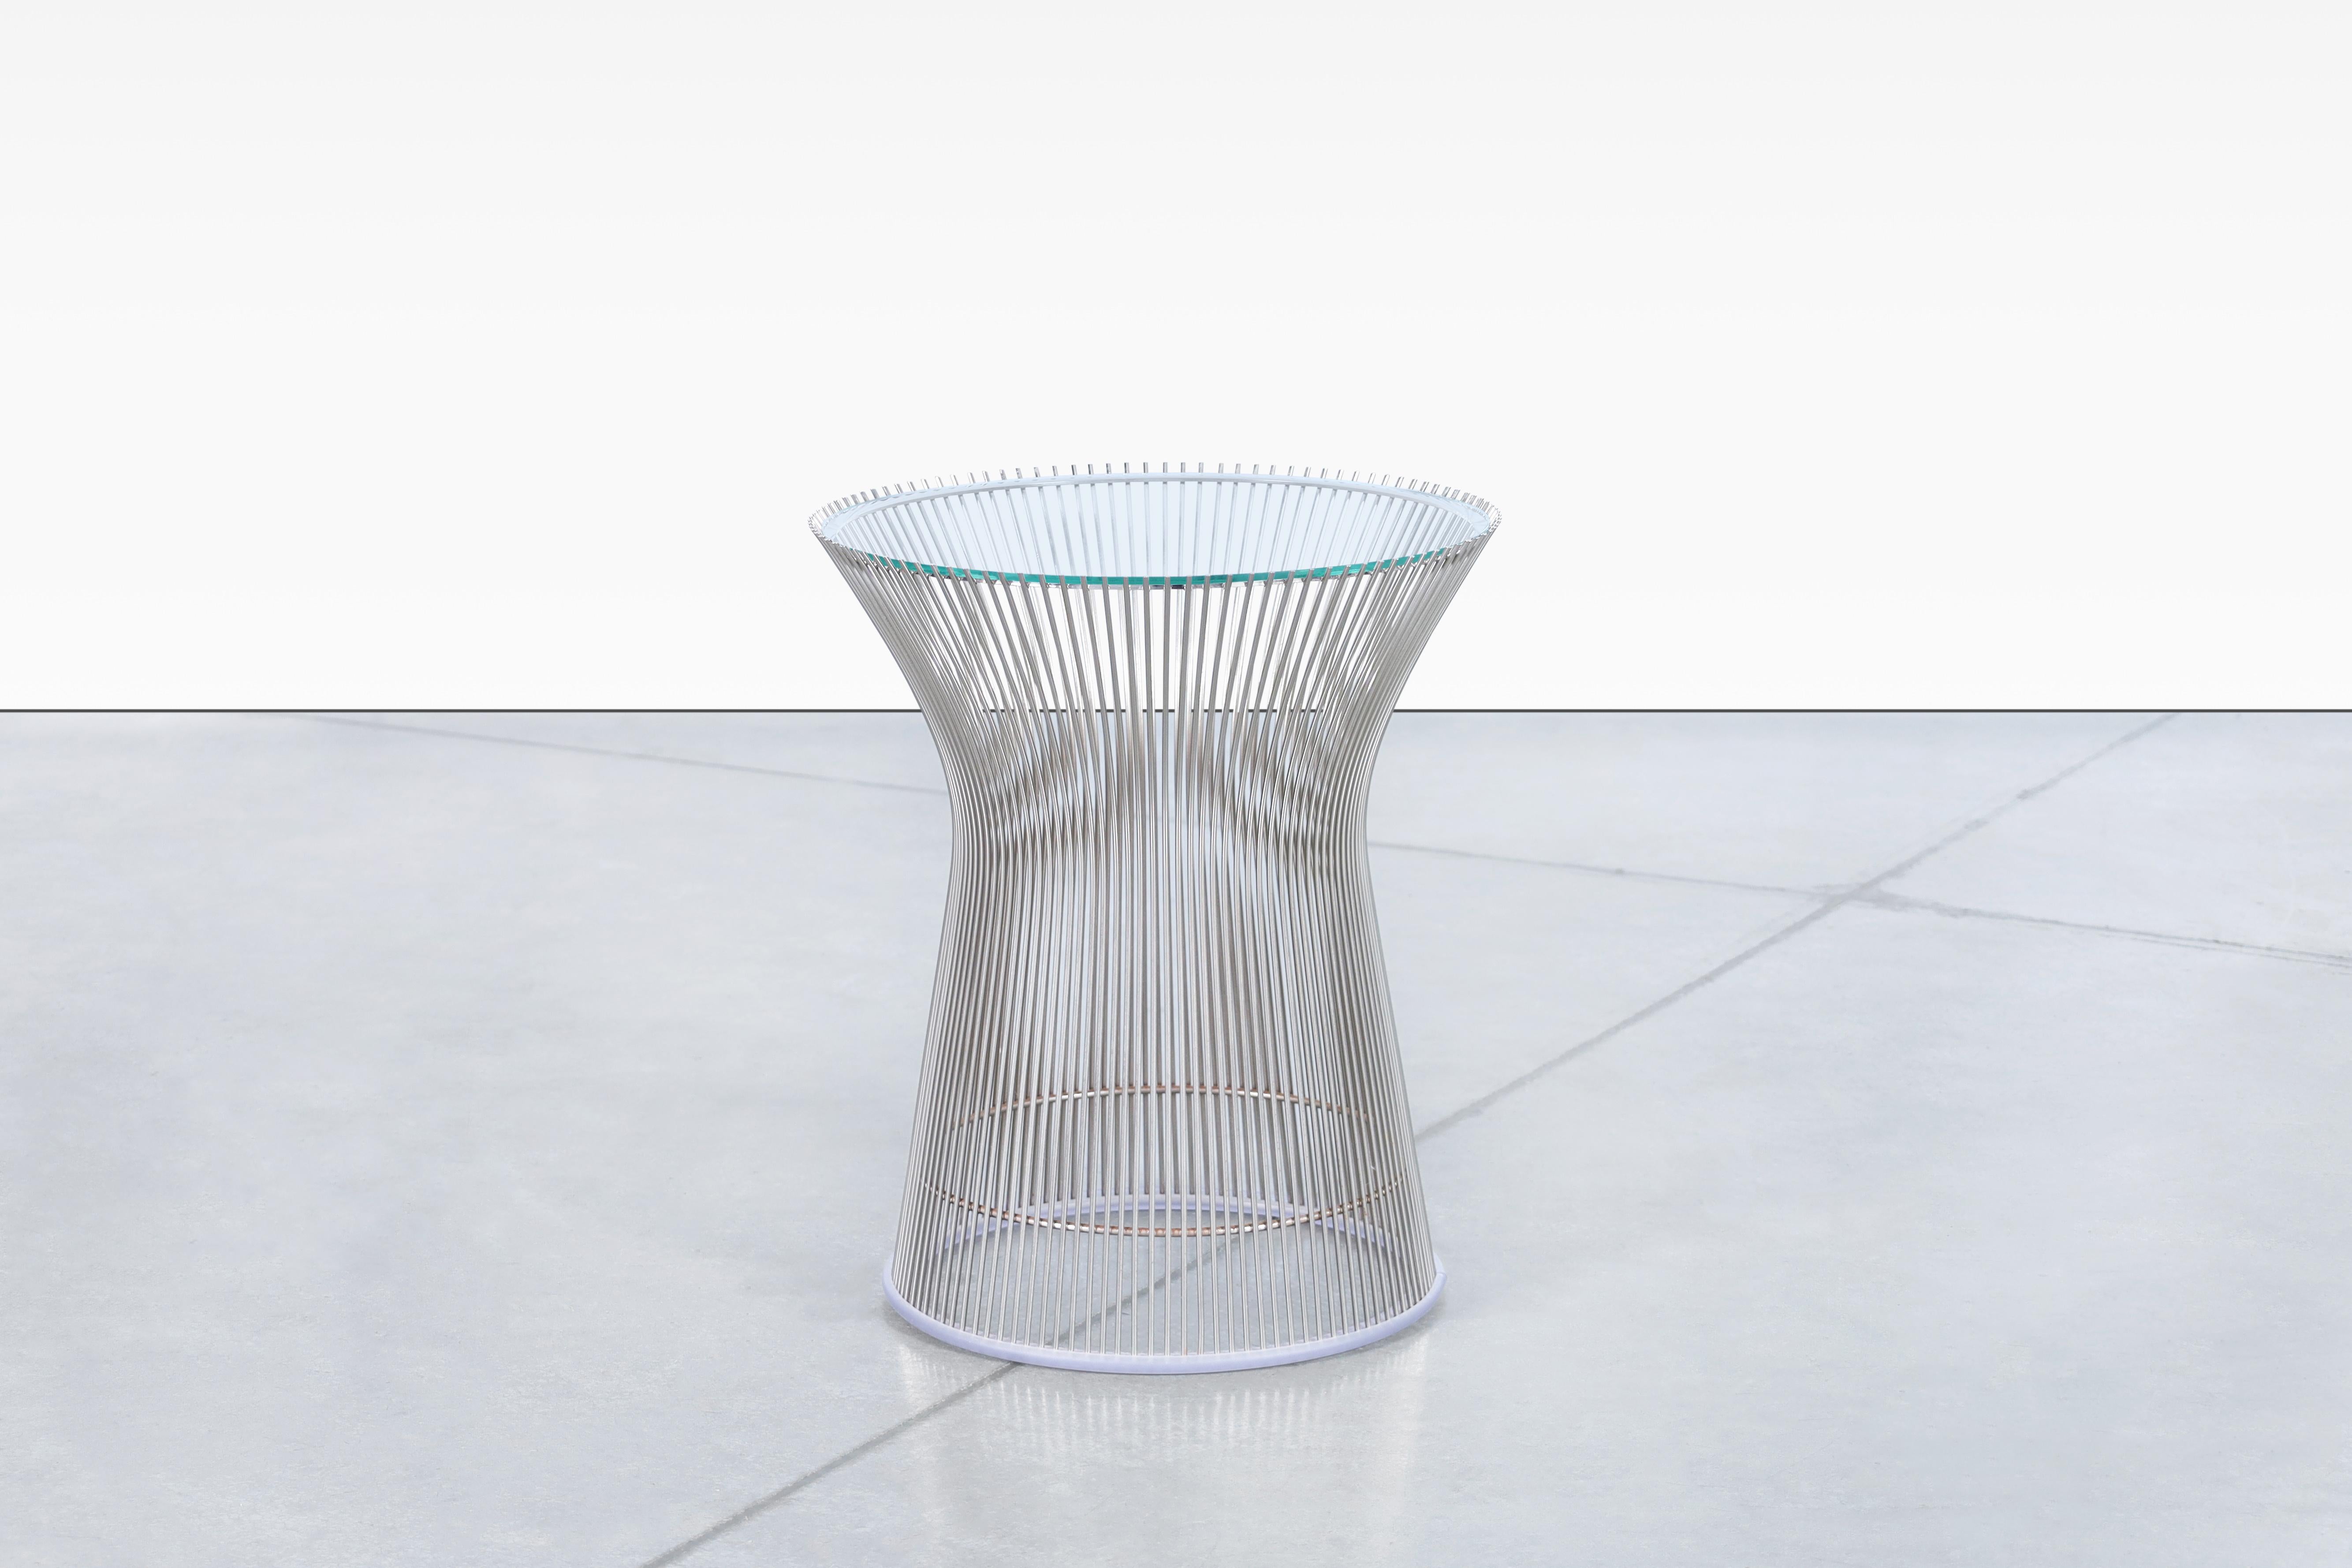 La table d'appoint en nickel poli conçue par Warren Platner et produite par Knoll est un meuble étonnant qui ne manquera pas d'impressionner. La base de la table, complexe et accrocheuse, est constituée de centaines de tiges d'acier incurvées qui